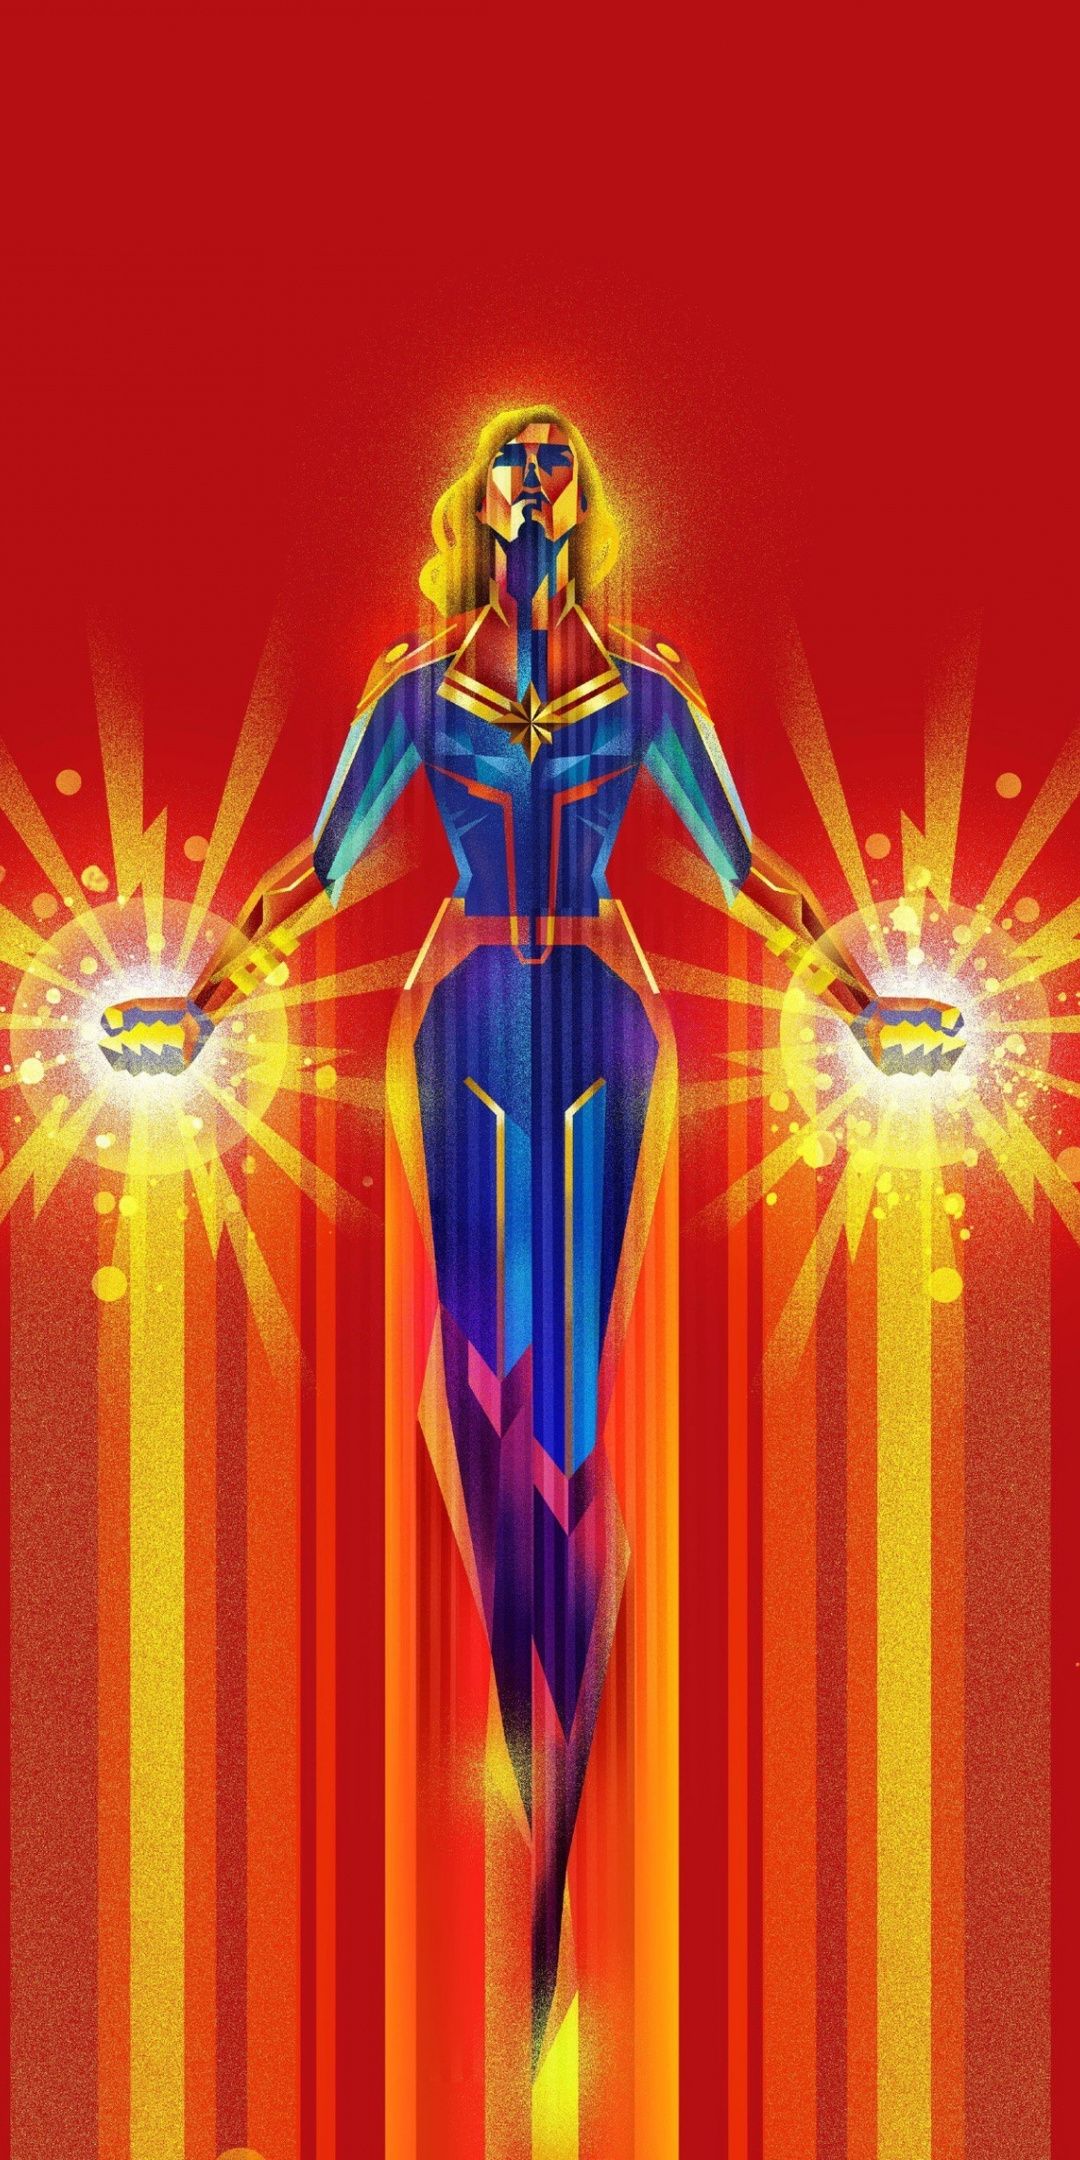 Captain Marvel 2019 Artwork Wallpapers